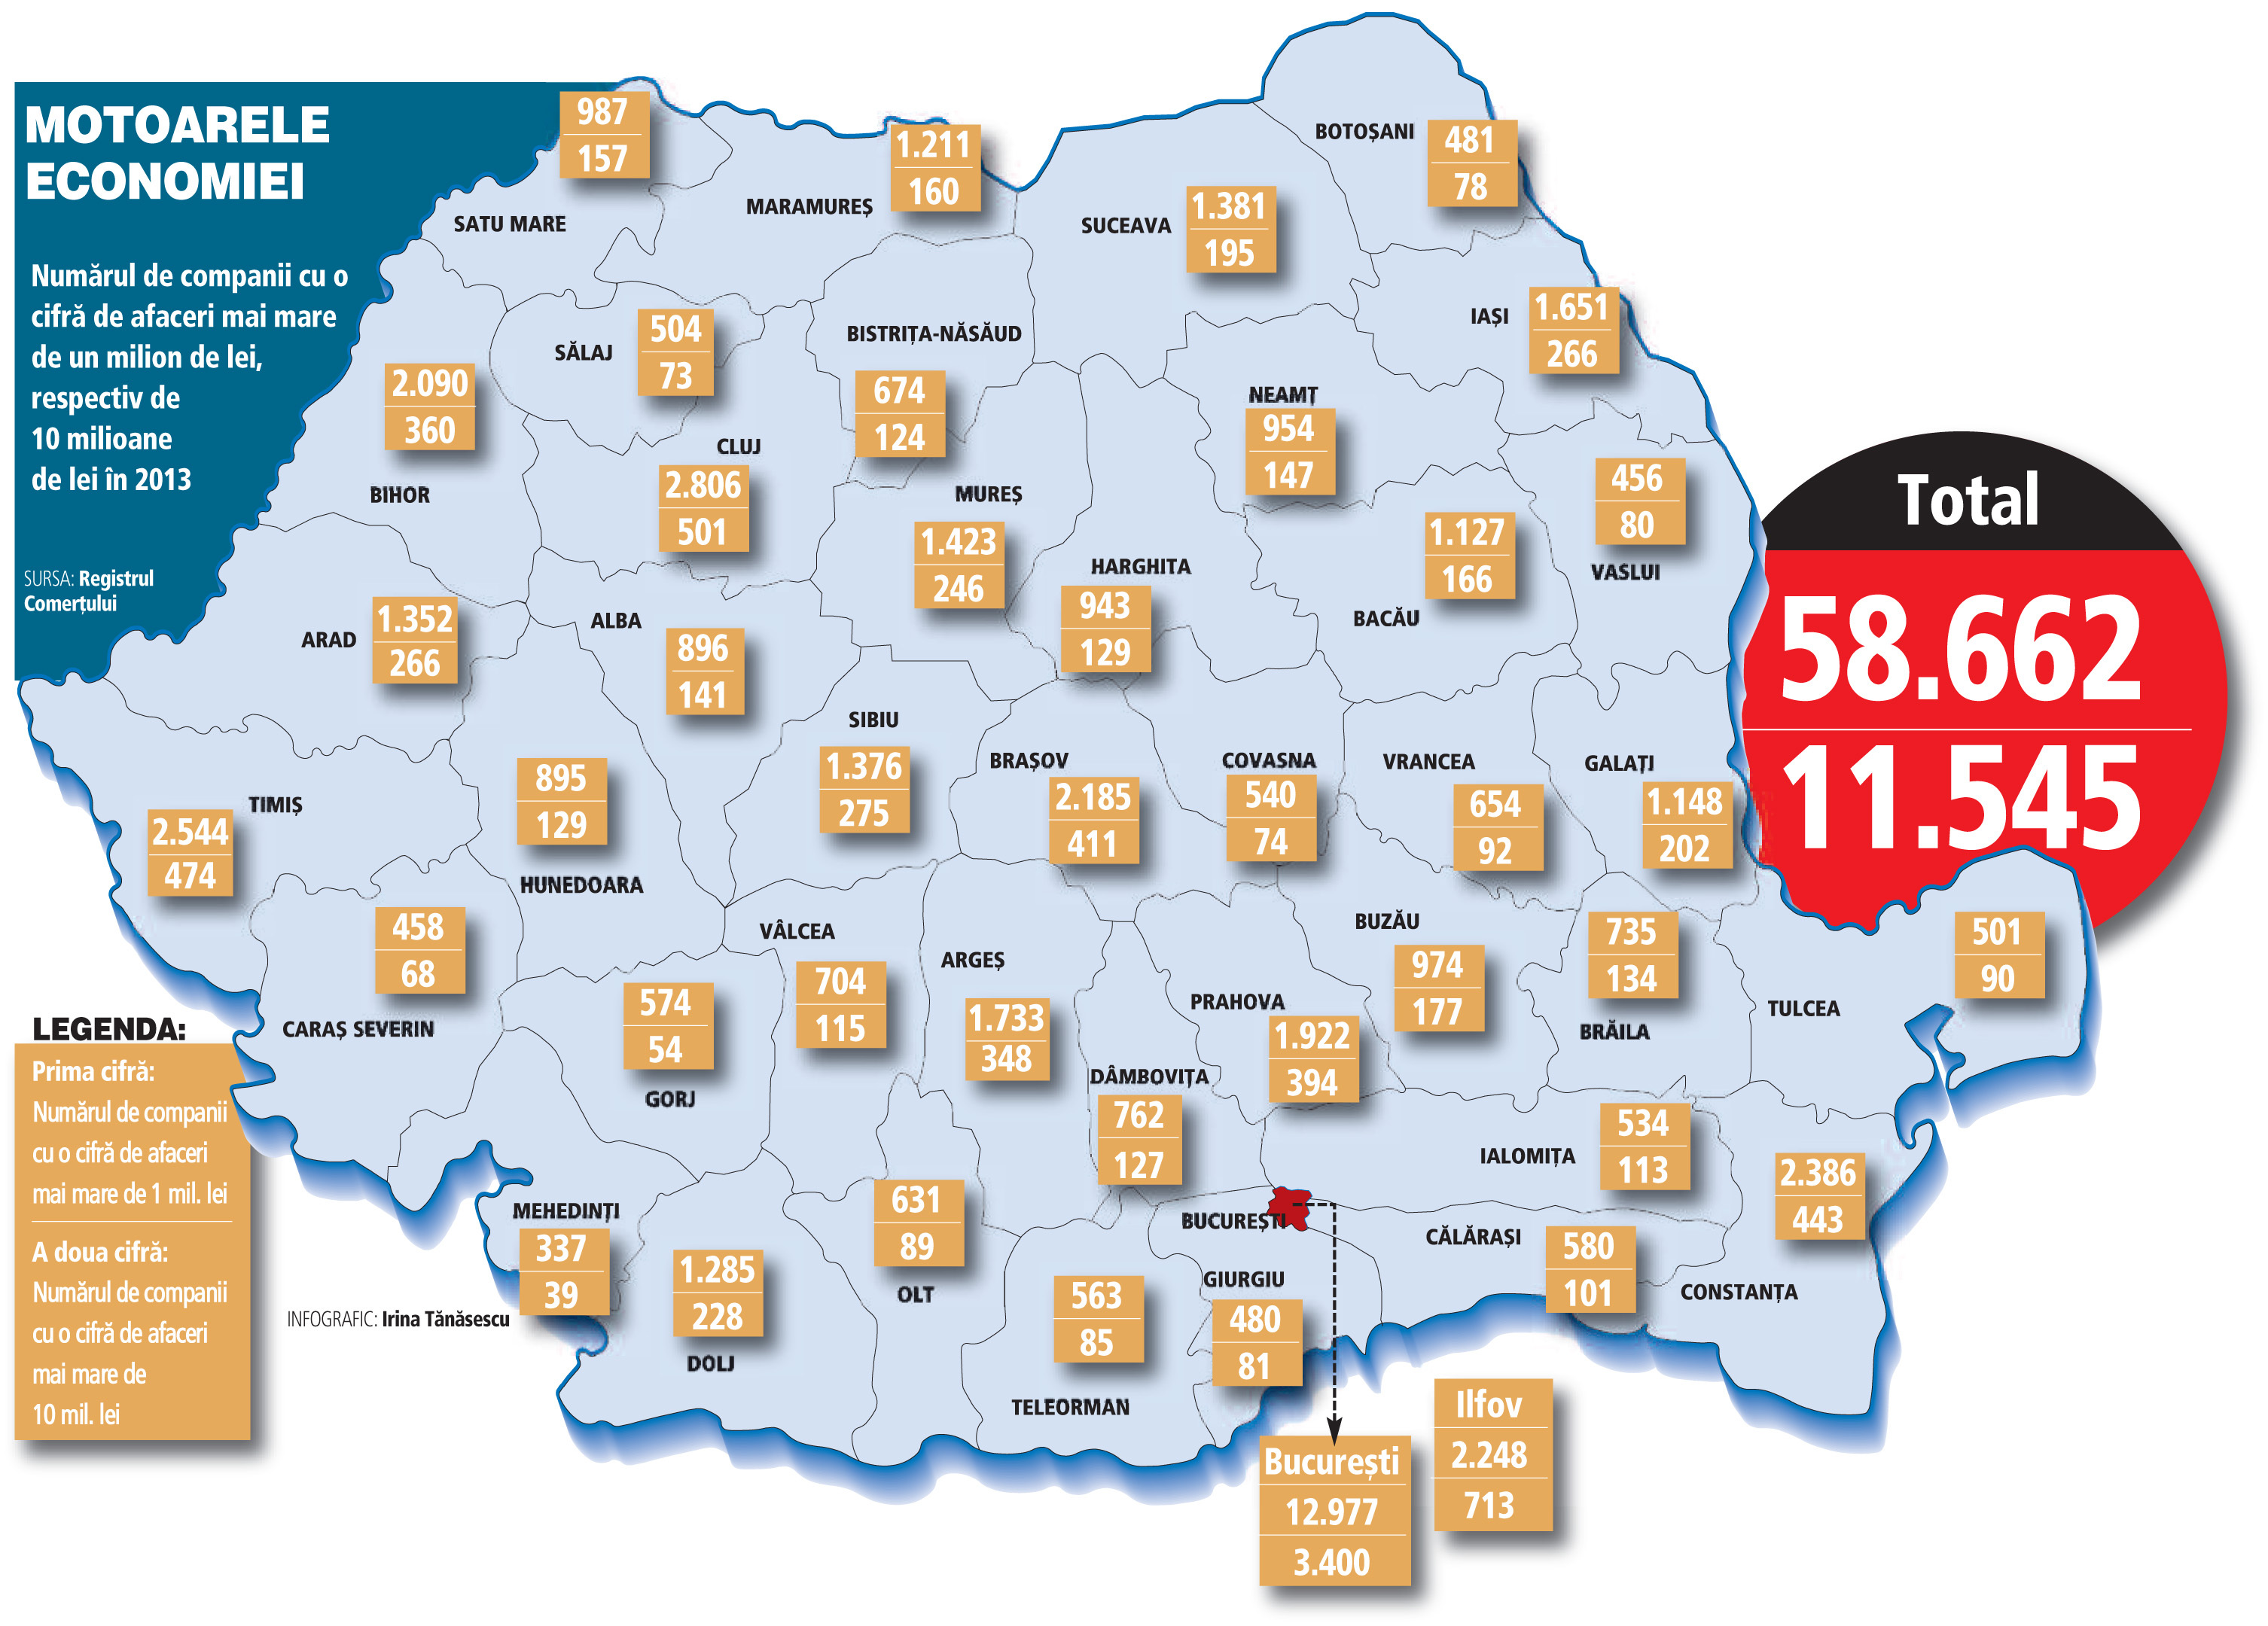 Infografic: Harta României pe judeţe după numărul de companii cu cifra de afaceri mai mare de un mil. lei